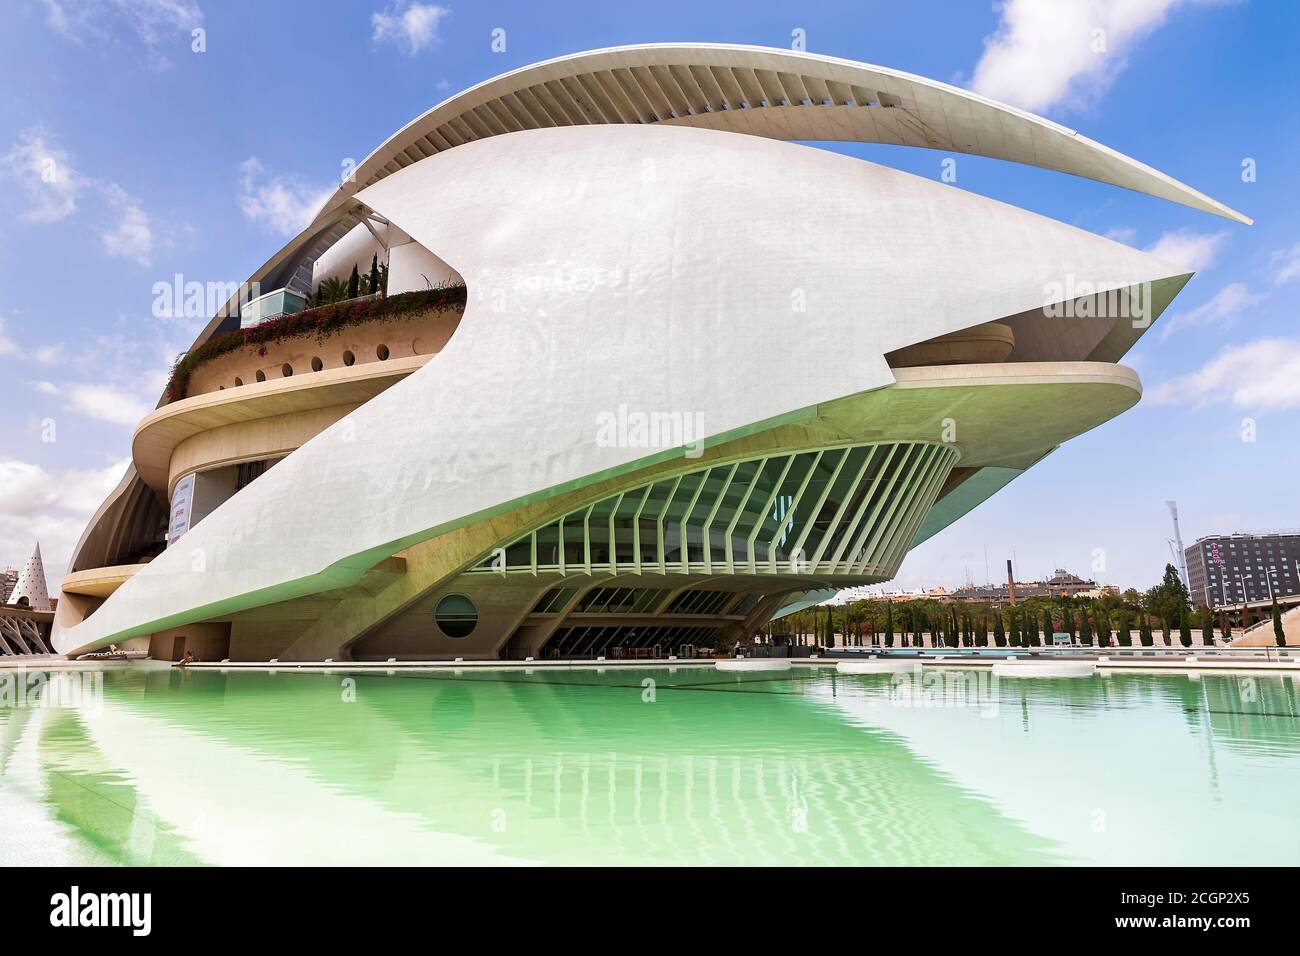 Modern Opera House, Palau de les Arts Reina Sofia, curved building, architect Santiago Calatrava, Ciudad de las Artes y de las Ciencias, Valencia Stock Photo